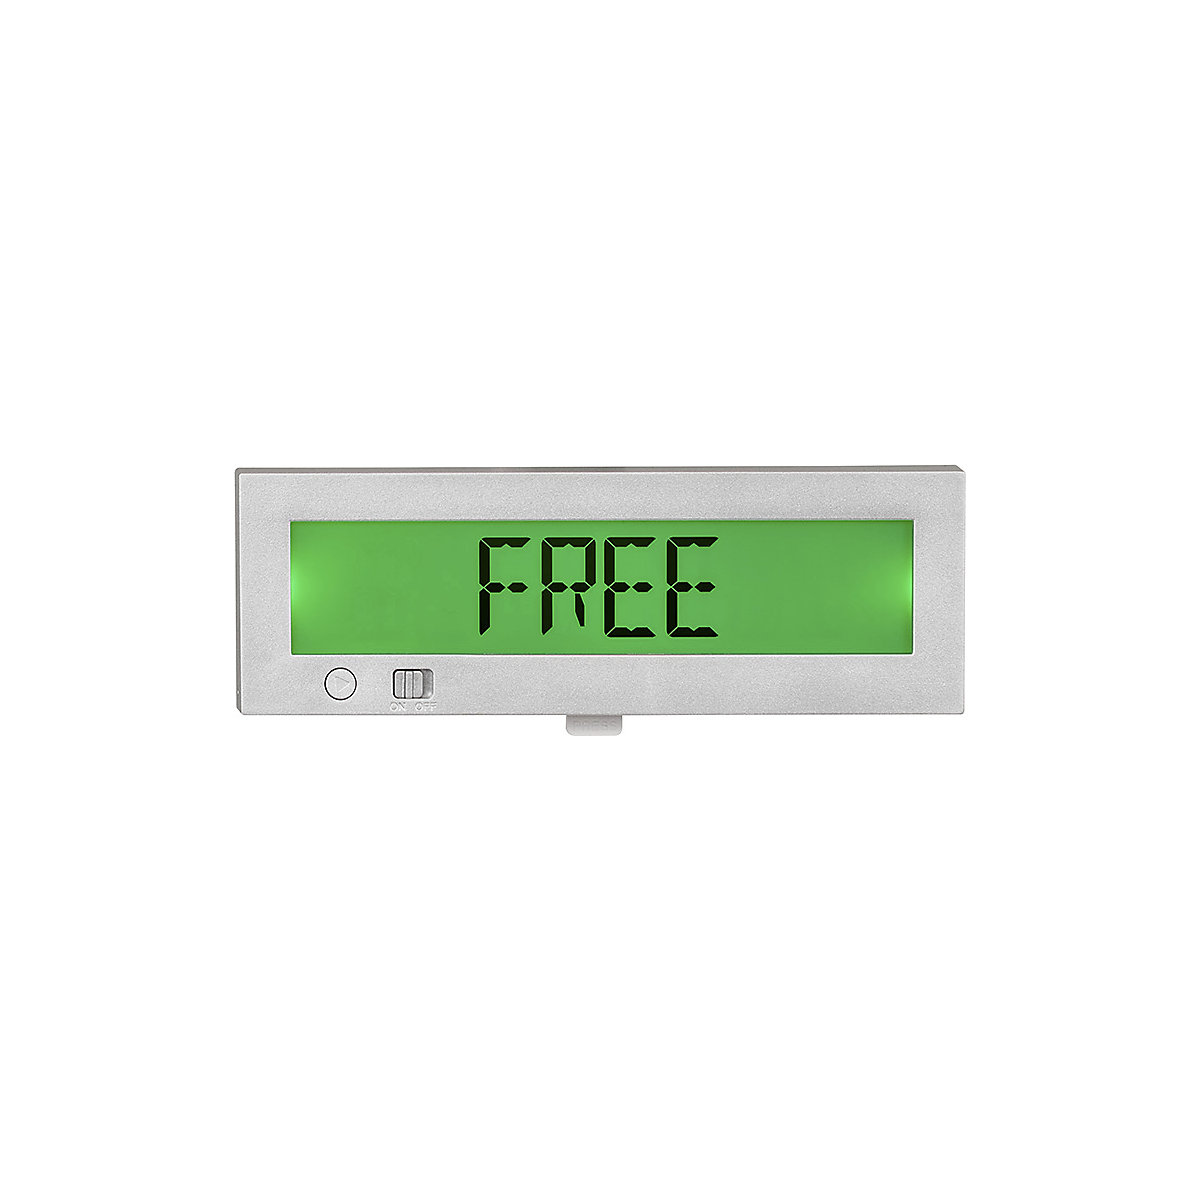 Digitalna tablica za vrata Free/Occupied (prosto/zasedeno) Go2 (Slika izdelka 13)-12